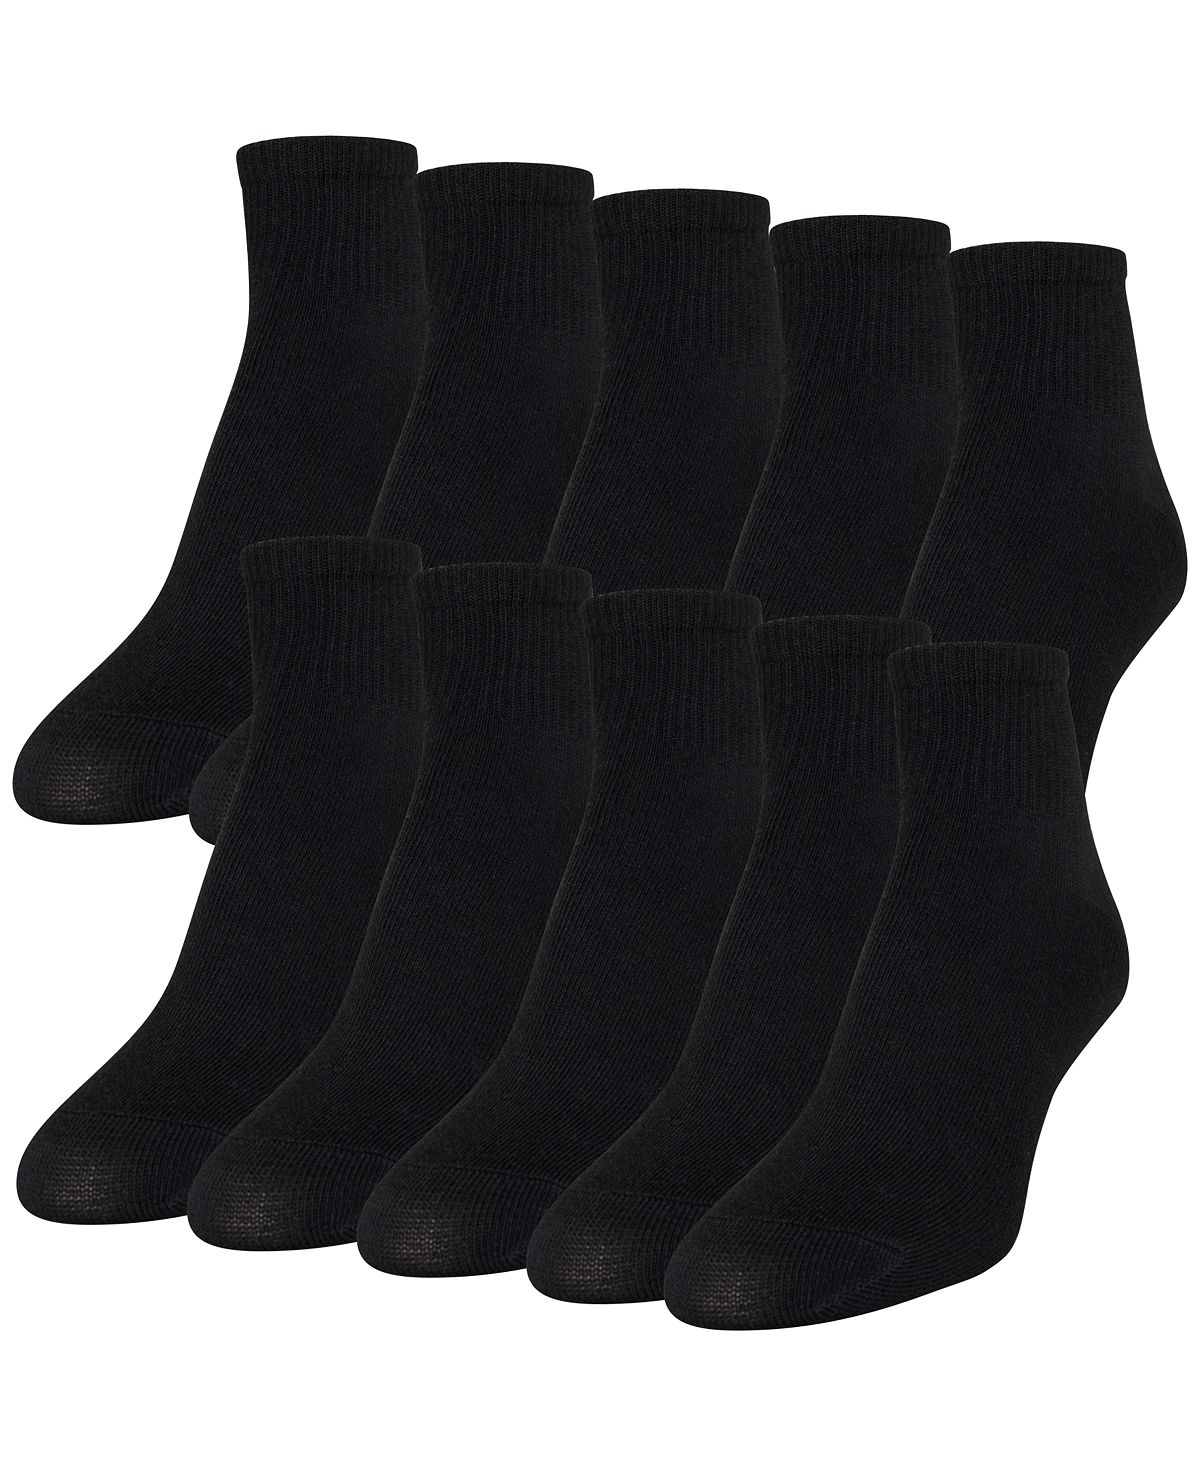 женские повседневные носки с подушечкой до щиколотки 6 пар также доступны в расширенных размерах gold toe Женские повседневные легкие носки до щиколотки (10 шт.) Gold Toe, черный